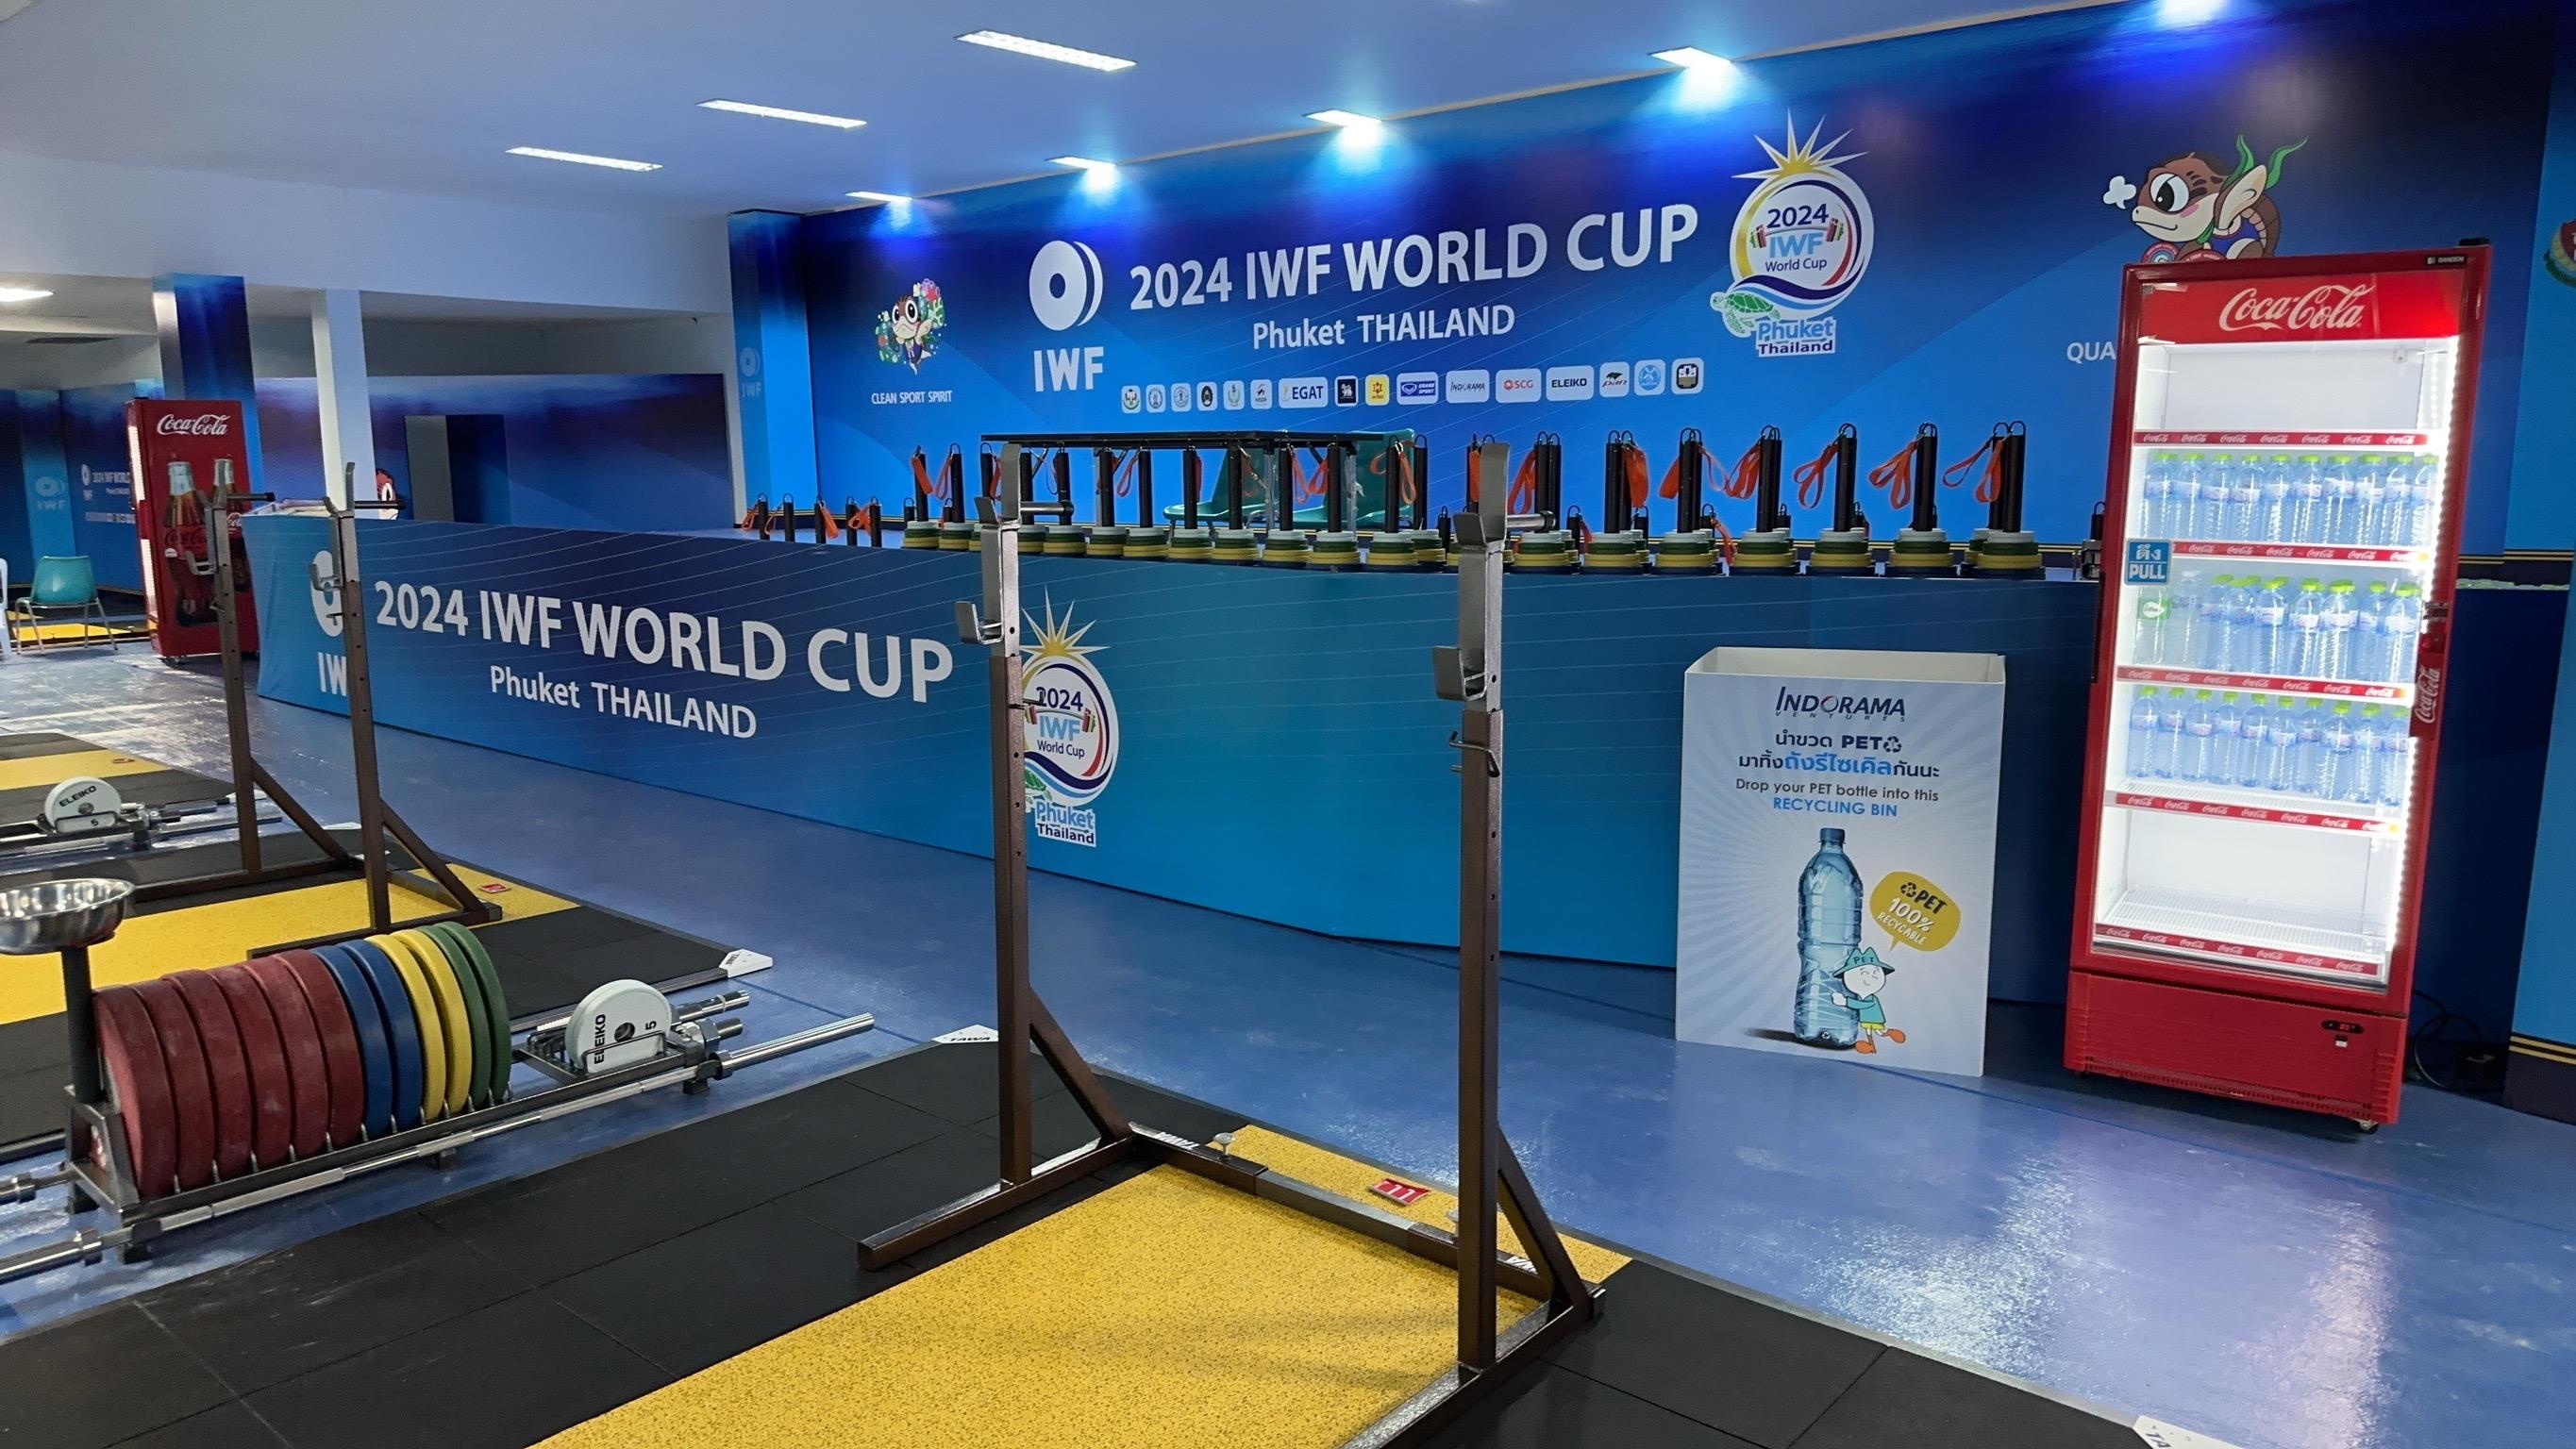 อินโดรามา เวนเจอร์ส สนับสนุนกีฬายกน้ำหนักรักษ์โลก 2024 IWF World Cup ภูเก็